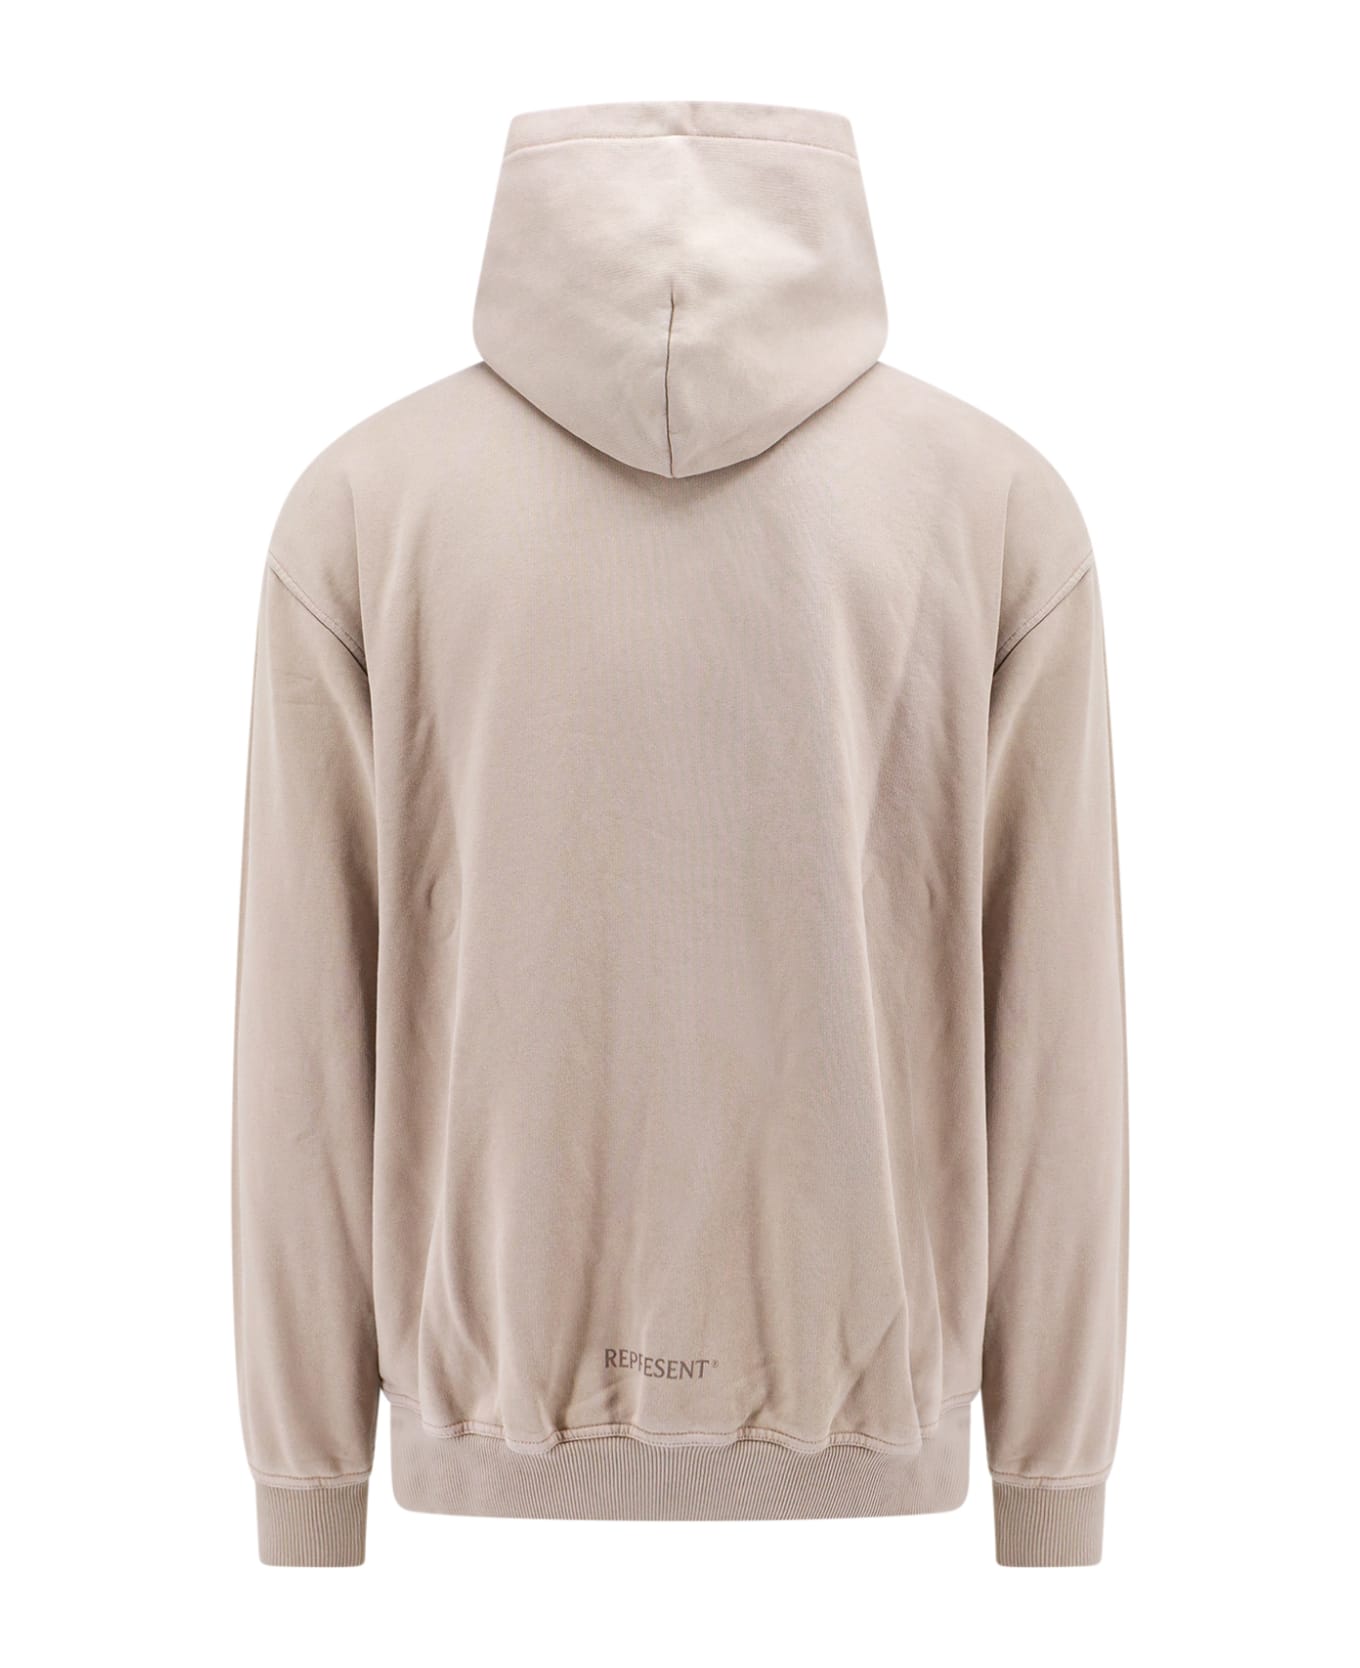 REPRESENT Sweatshirt - Grey